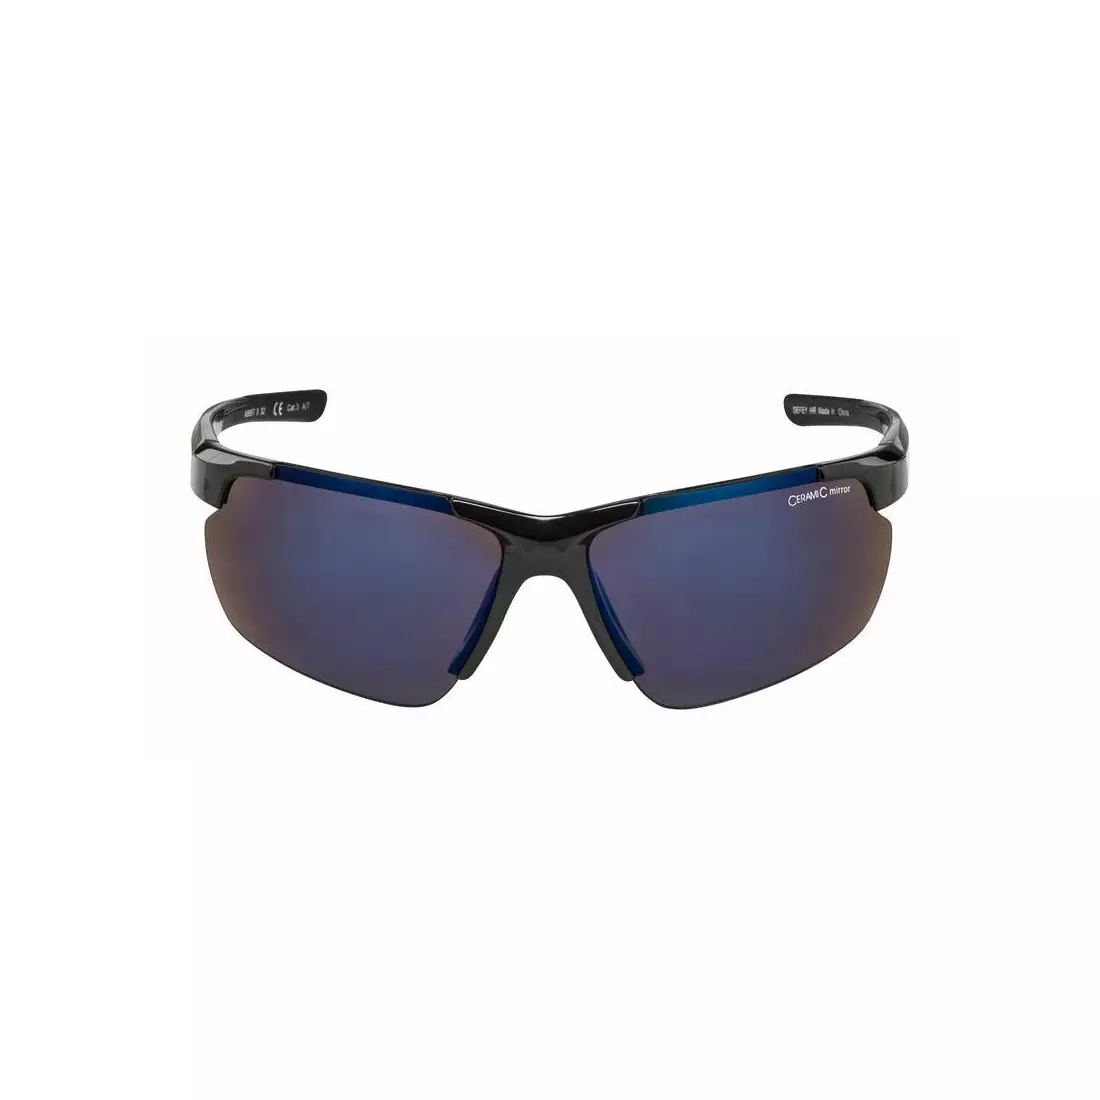 ALPINA sport szemüveg DEFFY HR BLUE MIRROR S3 black A8657332